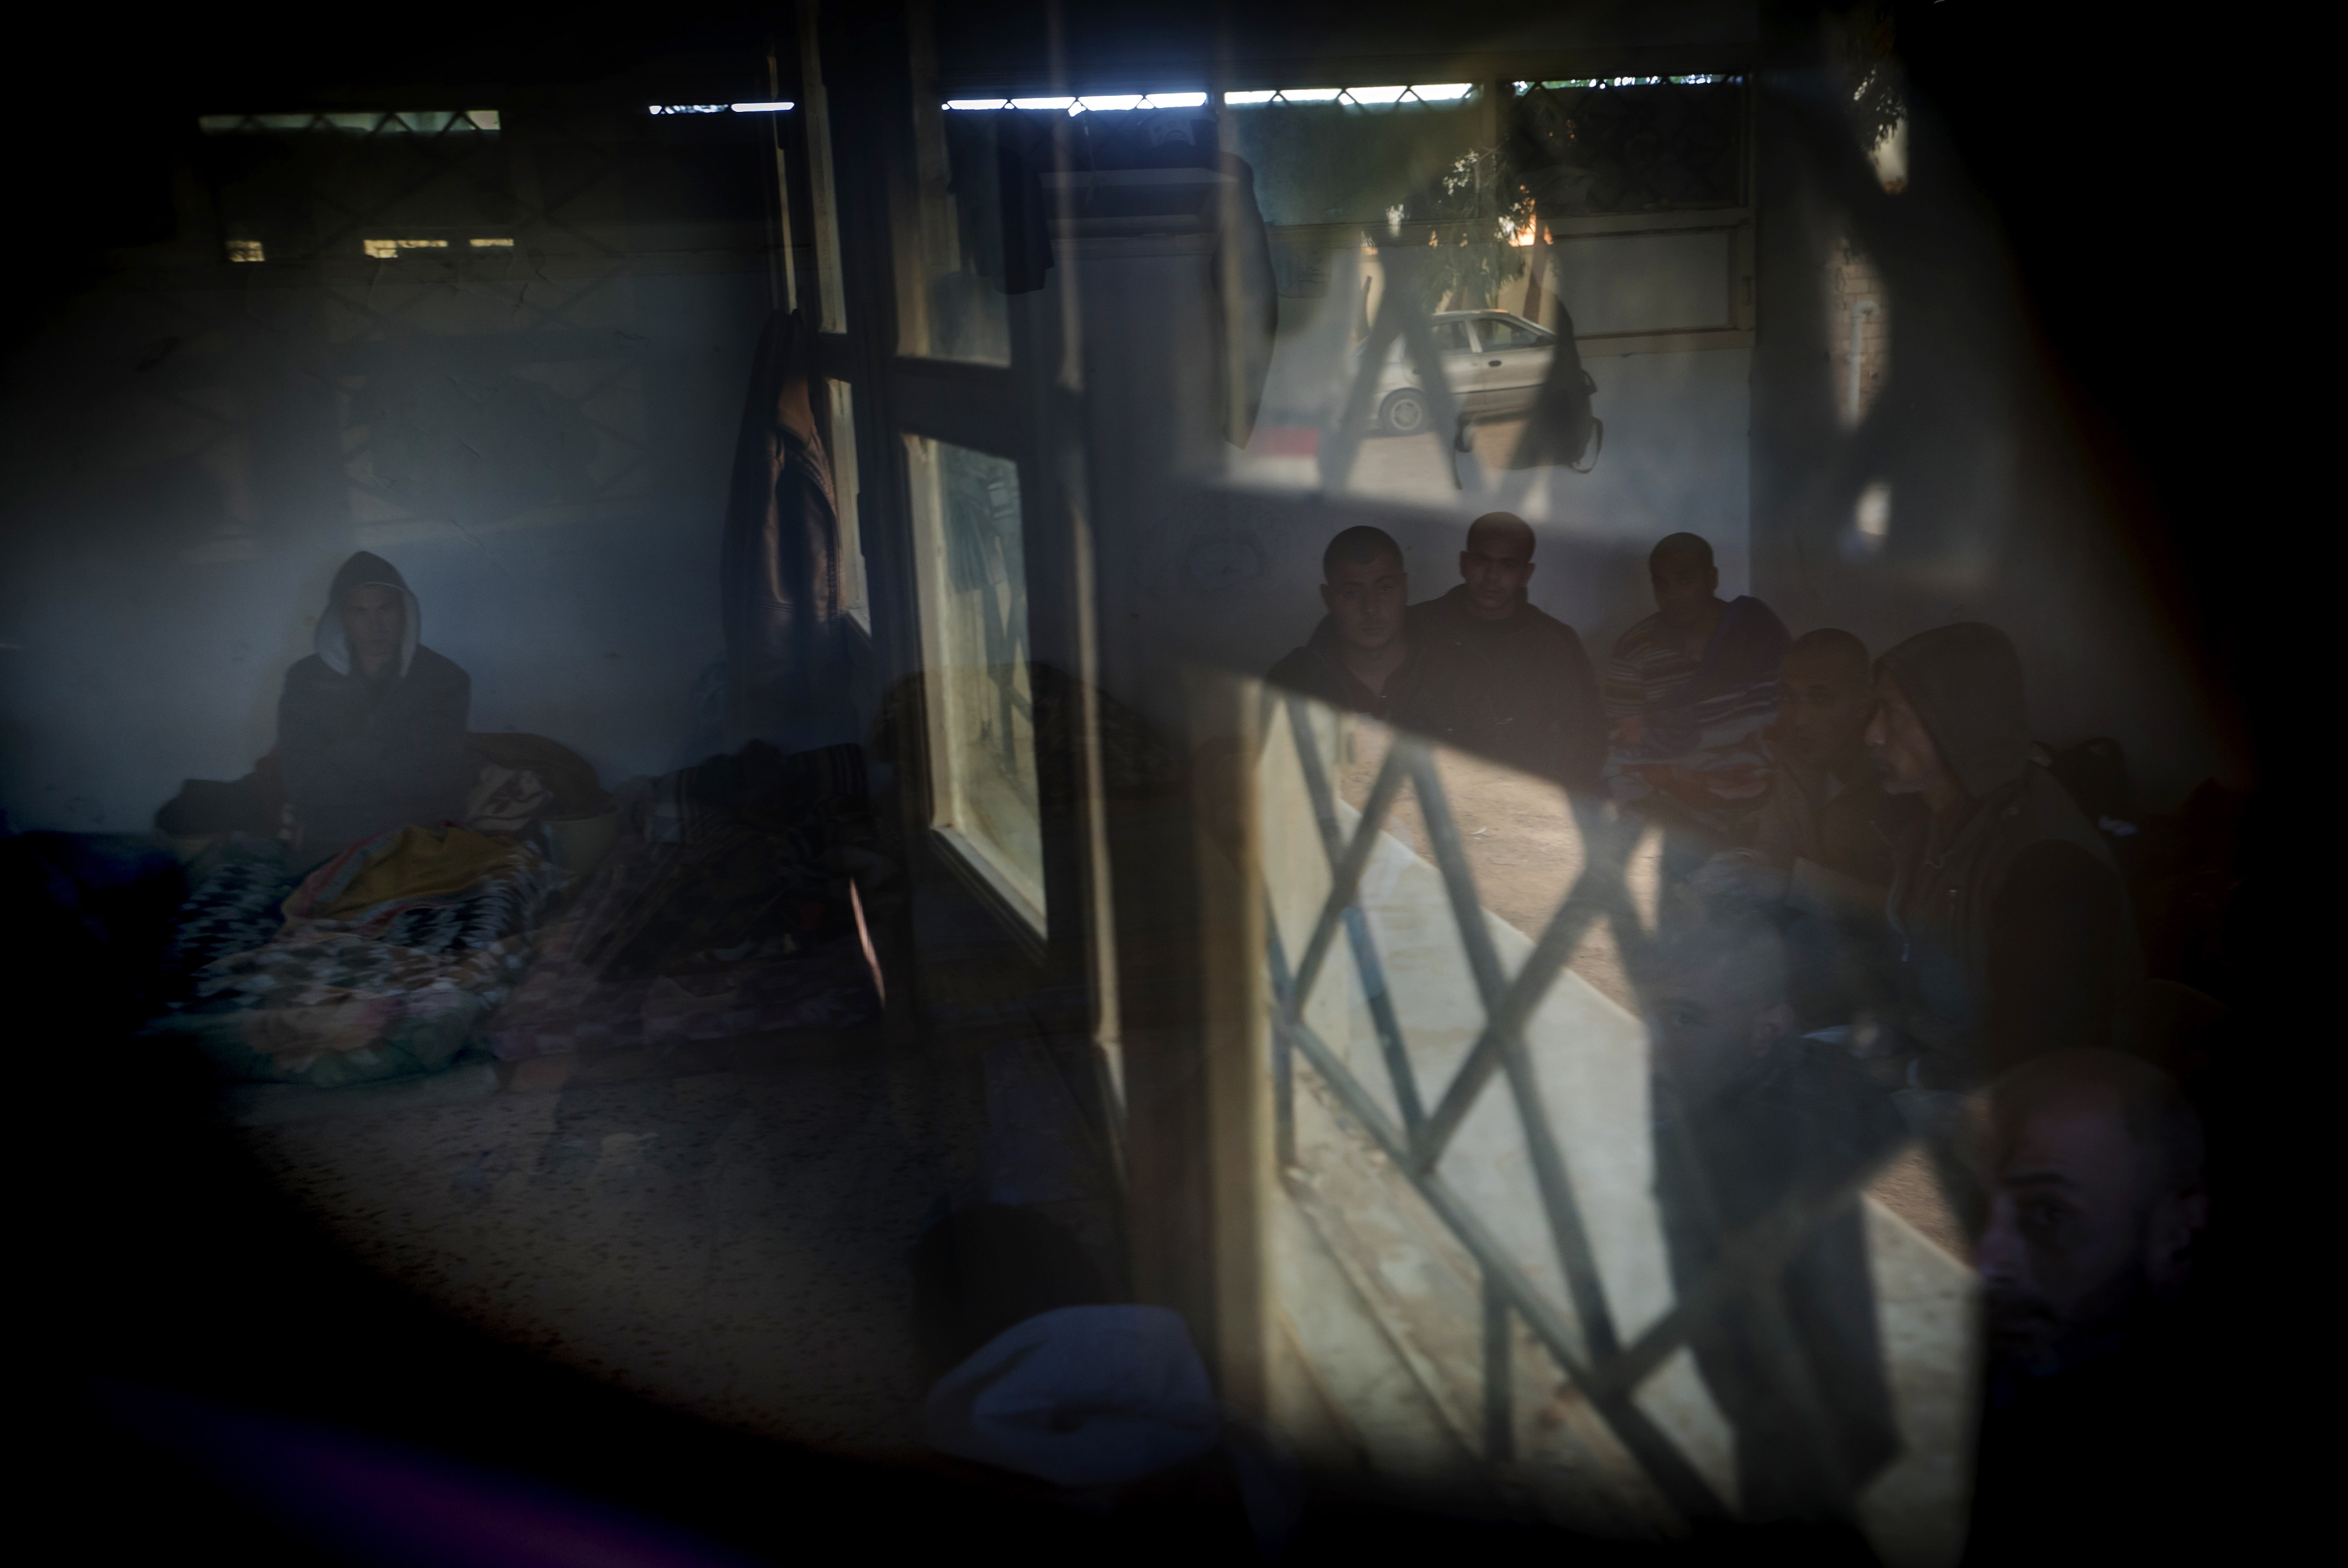 Persone detenute a Garbugli, Libia (marzo 2016). Foto tratta da "Trapped in transit", ©Ricardo Garcia Vilanova.